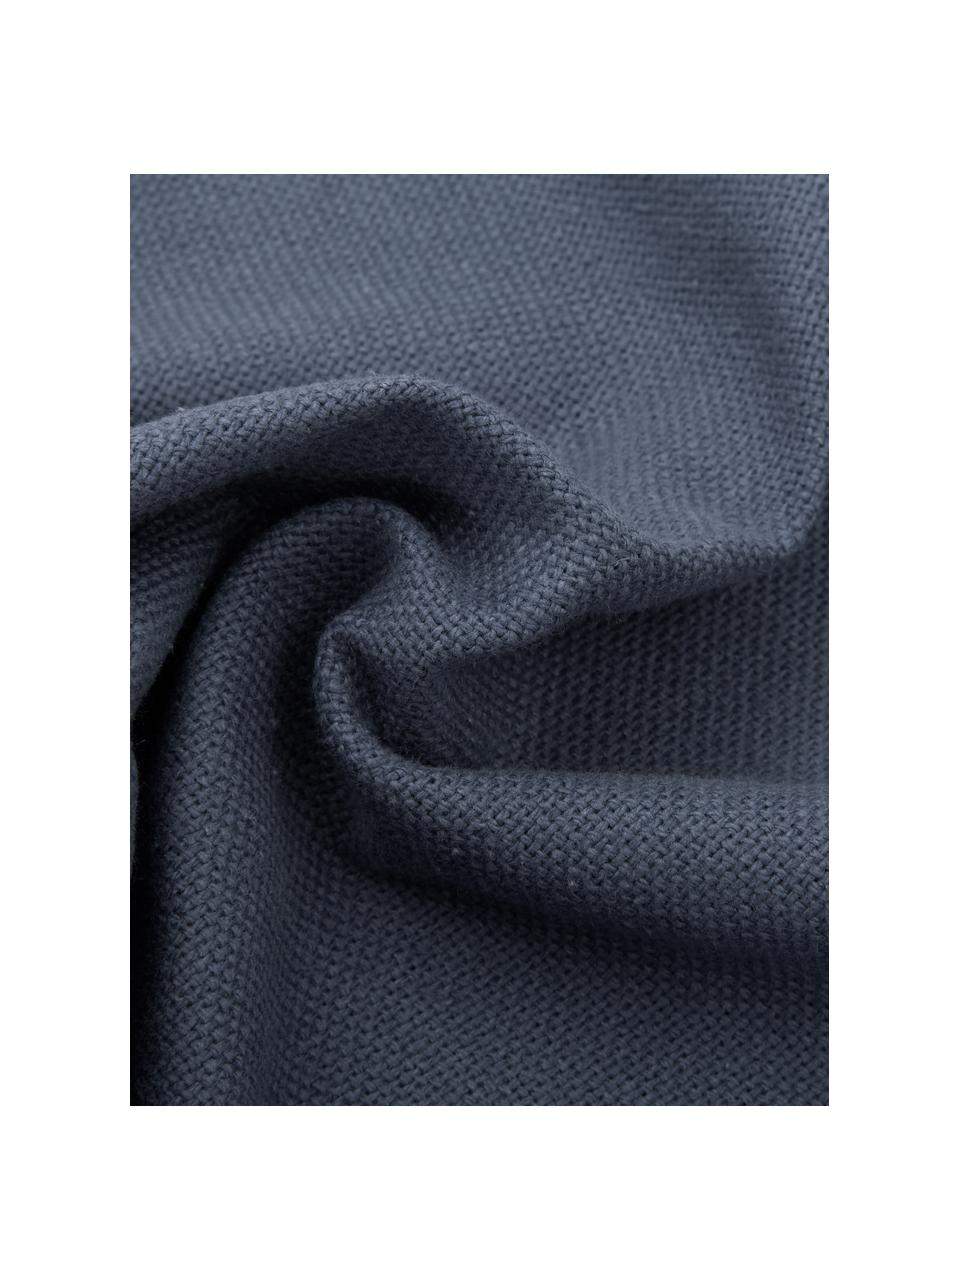 Kissen Prague in Blau mit Fransenabschluss, mit Inlett, Vorderseite: 100% Baumwolle, grob gewe, Rückseite: 100% Baumwolle, Blau, 40 x 40 cm